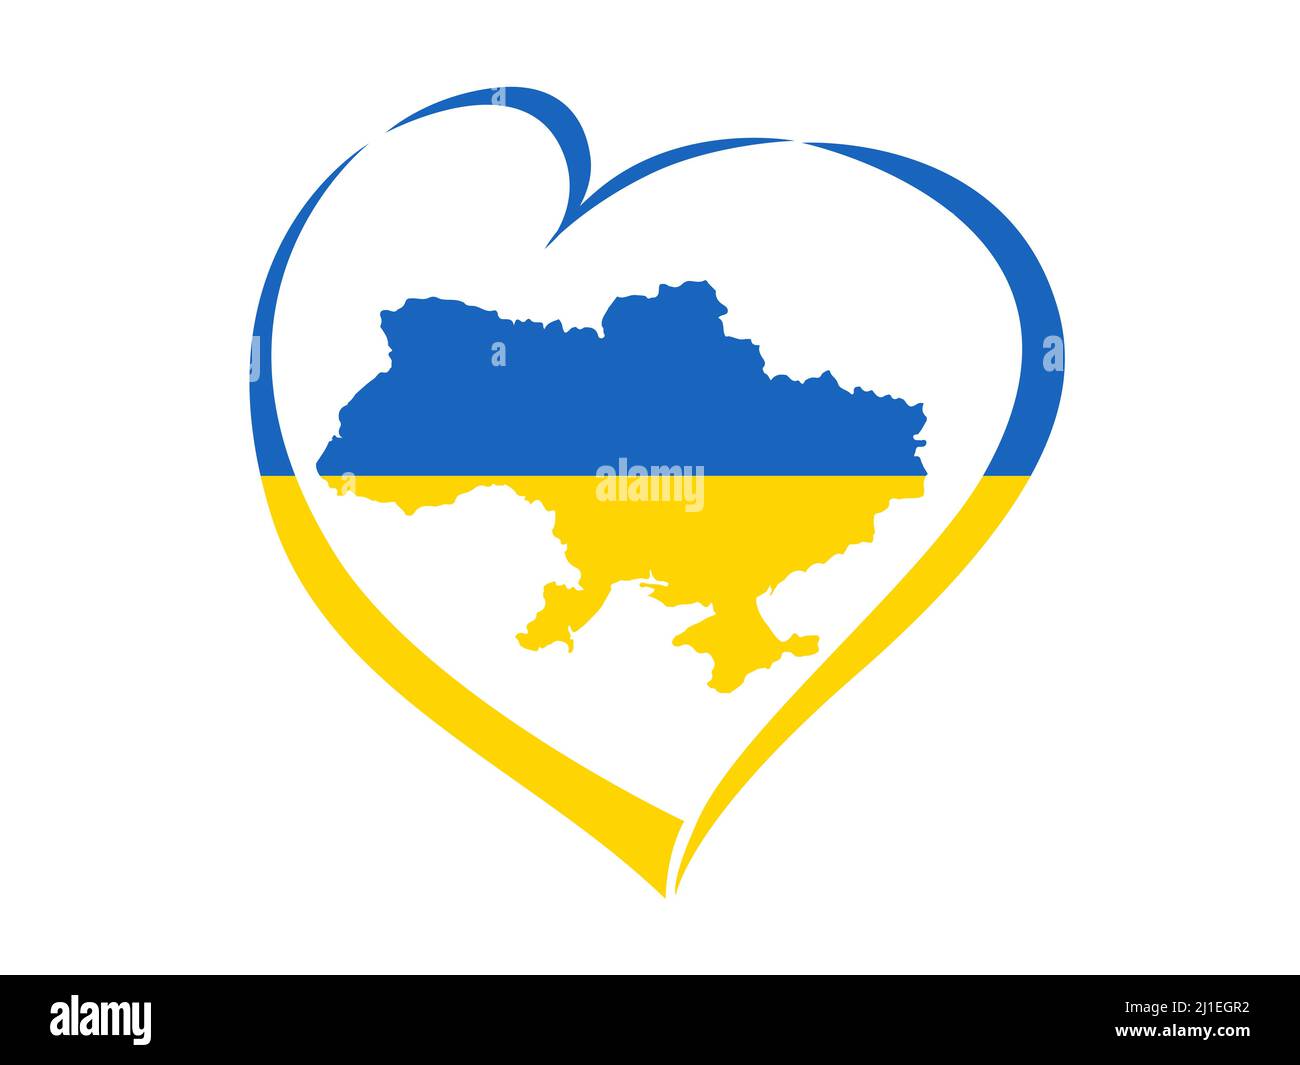 Carte ukrainienne avec drapeau au coeur. Drapeau patriotique ukrainien abstrait avec symbole d'amour. Idée conceptuelle bleue et jaune - avec l'Ukraine dans le coeur vectoriel Illustration de Vecteur